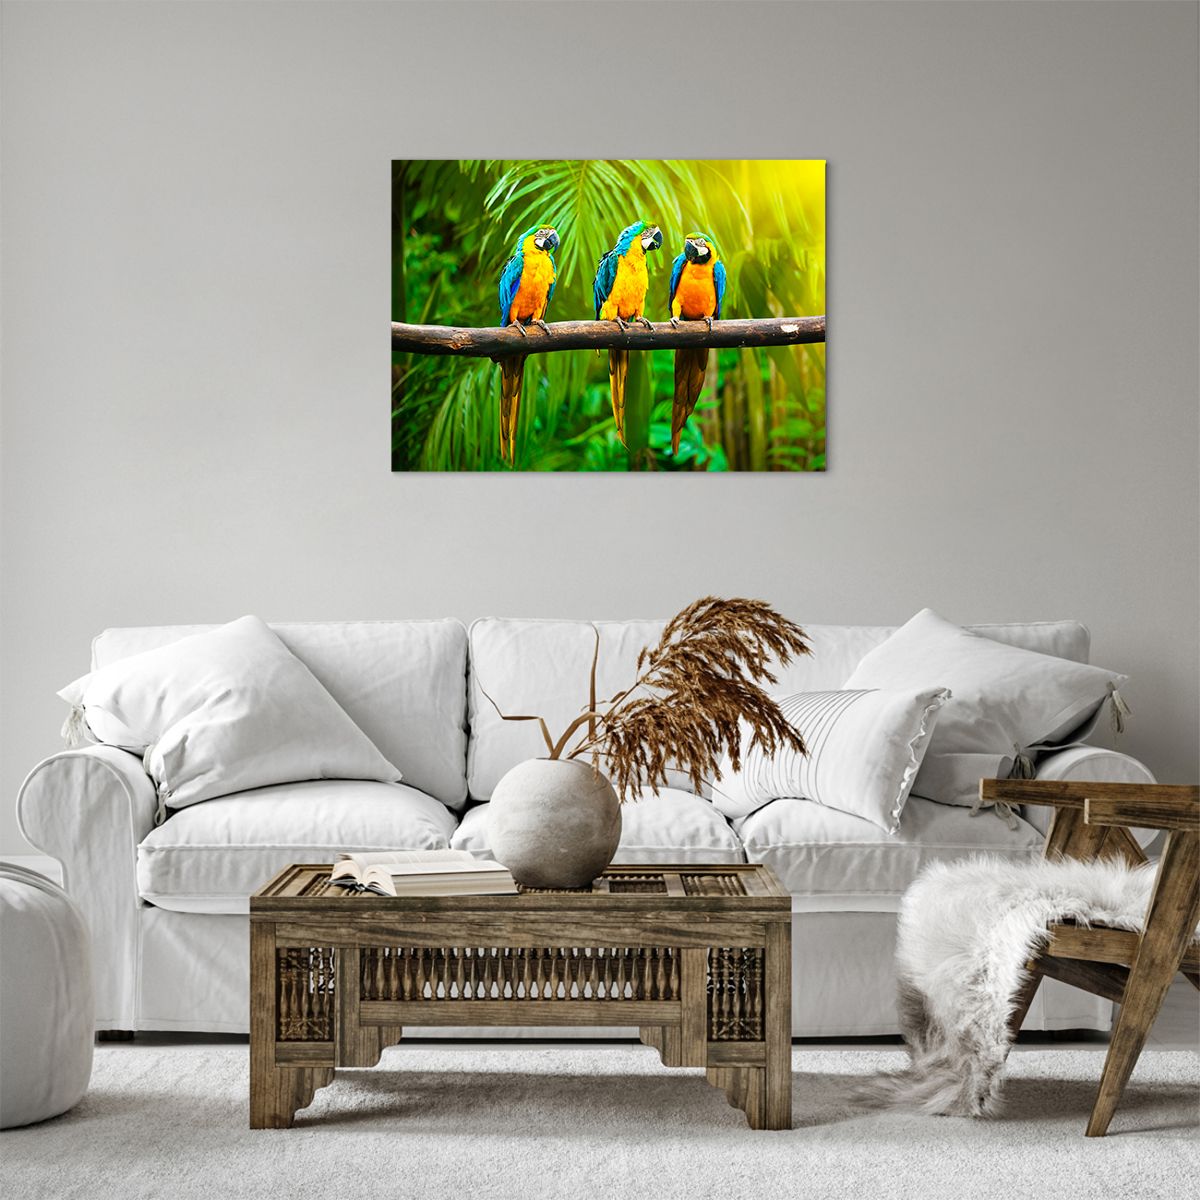 Bild auf Leinwand Die Vögel, Bild auf Leinwand Papageien, Bild auf Leinwand Natur, Bild auf Leinwand Palmenblätter, Bild auf Leinwand Tiere